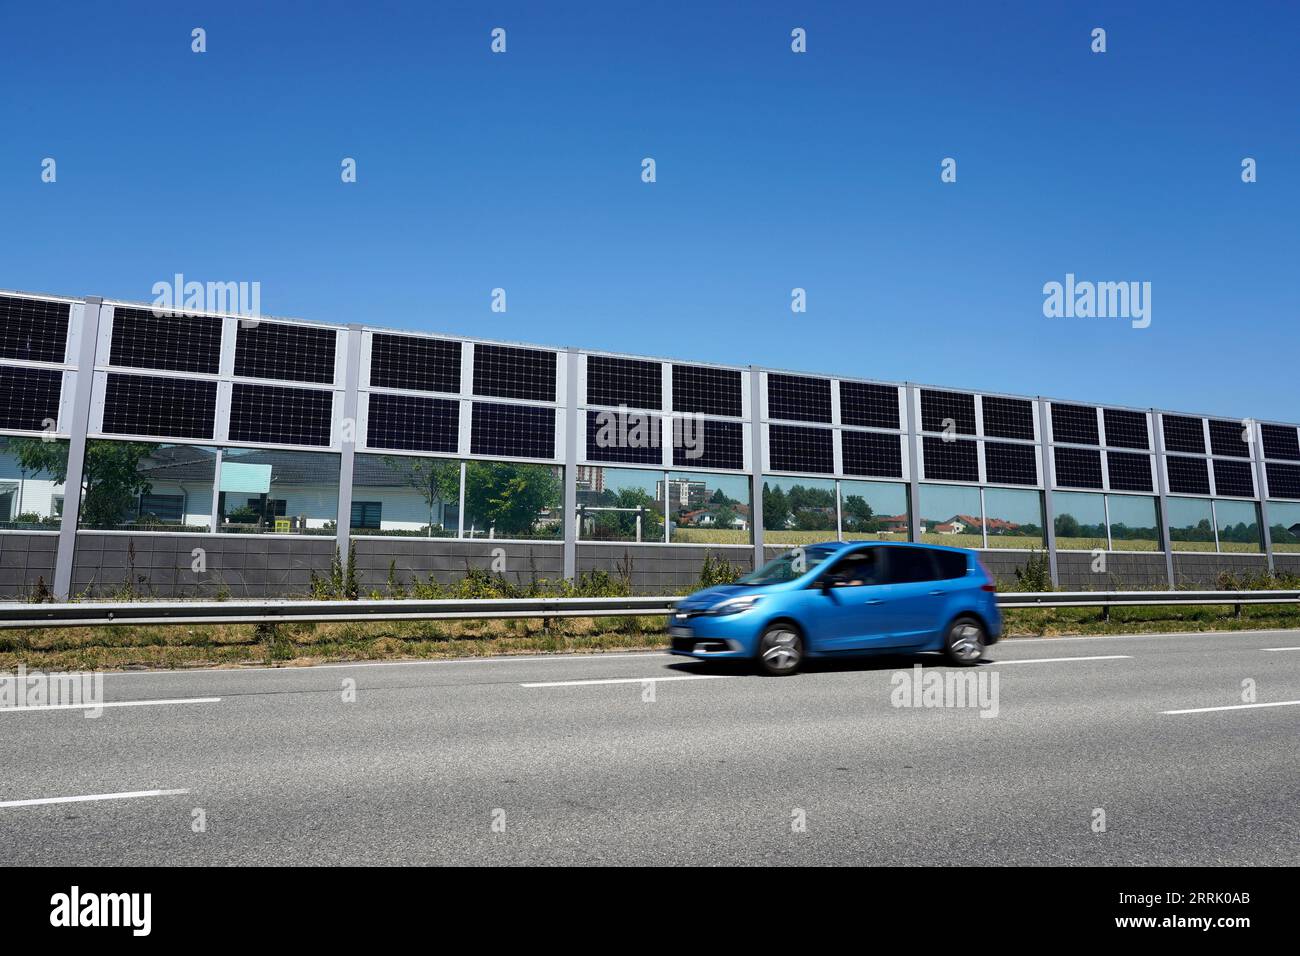 Deutschland, Bayern, Oberbayern, Neuötting, Wohnsiedlung, davor Schallmauer mit Photovoltaik, Straße, vorbeifahrendes Auto Stockfoto